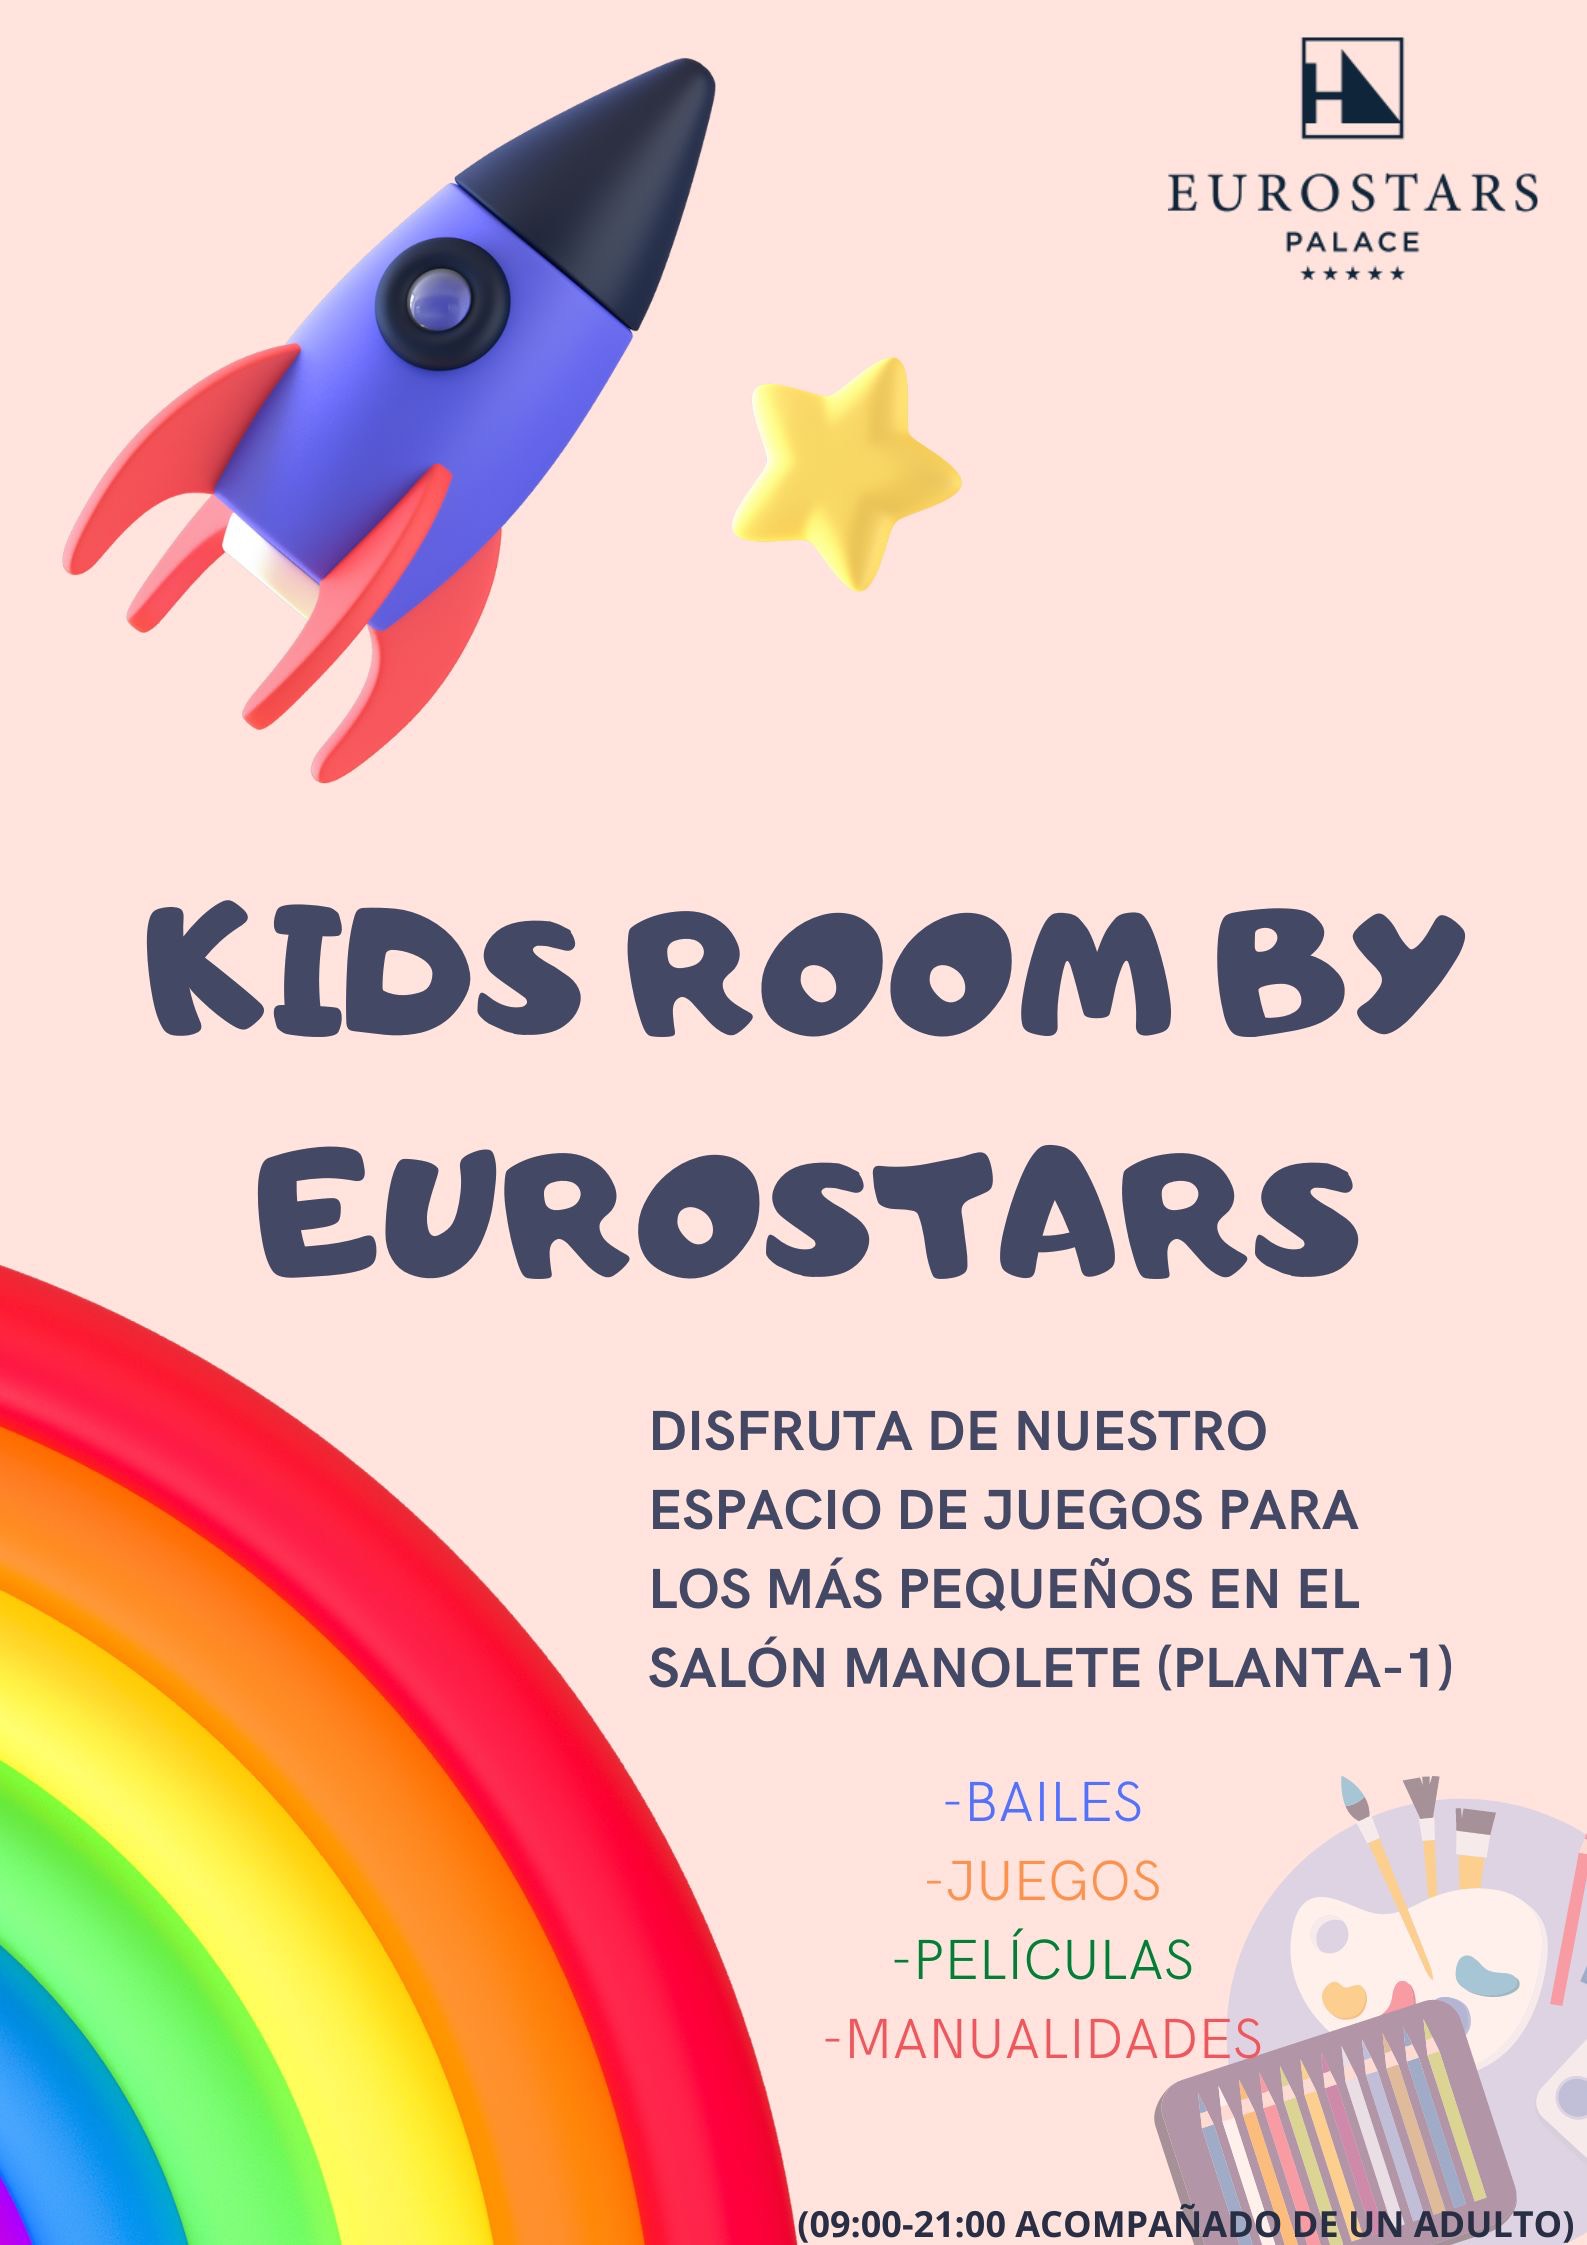 Kids room by Eurostars